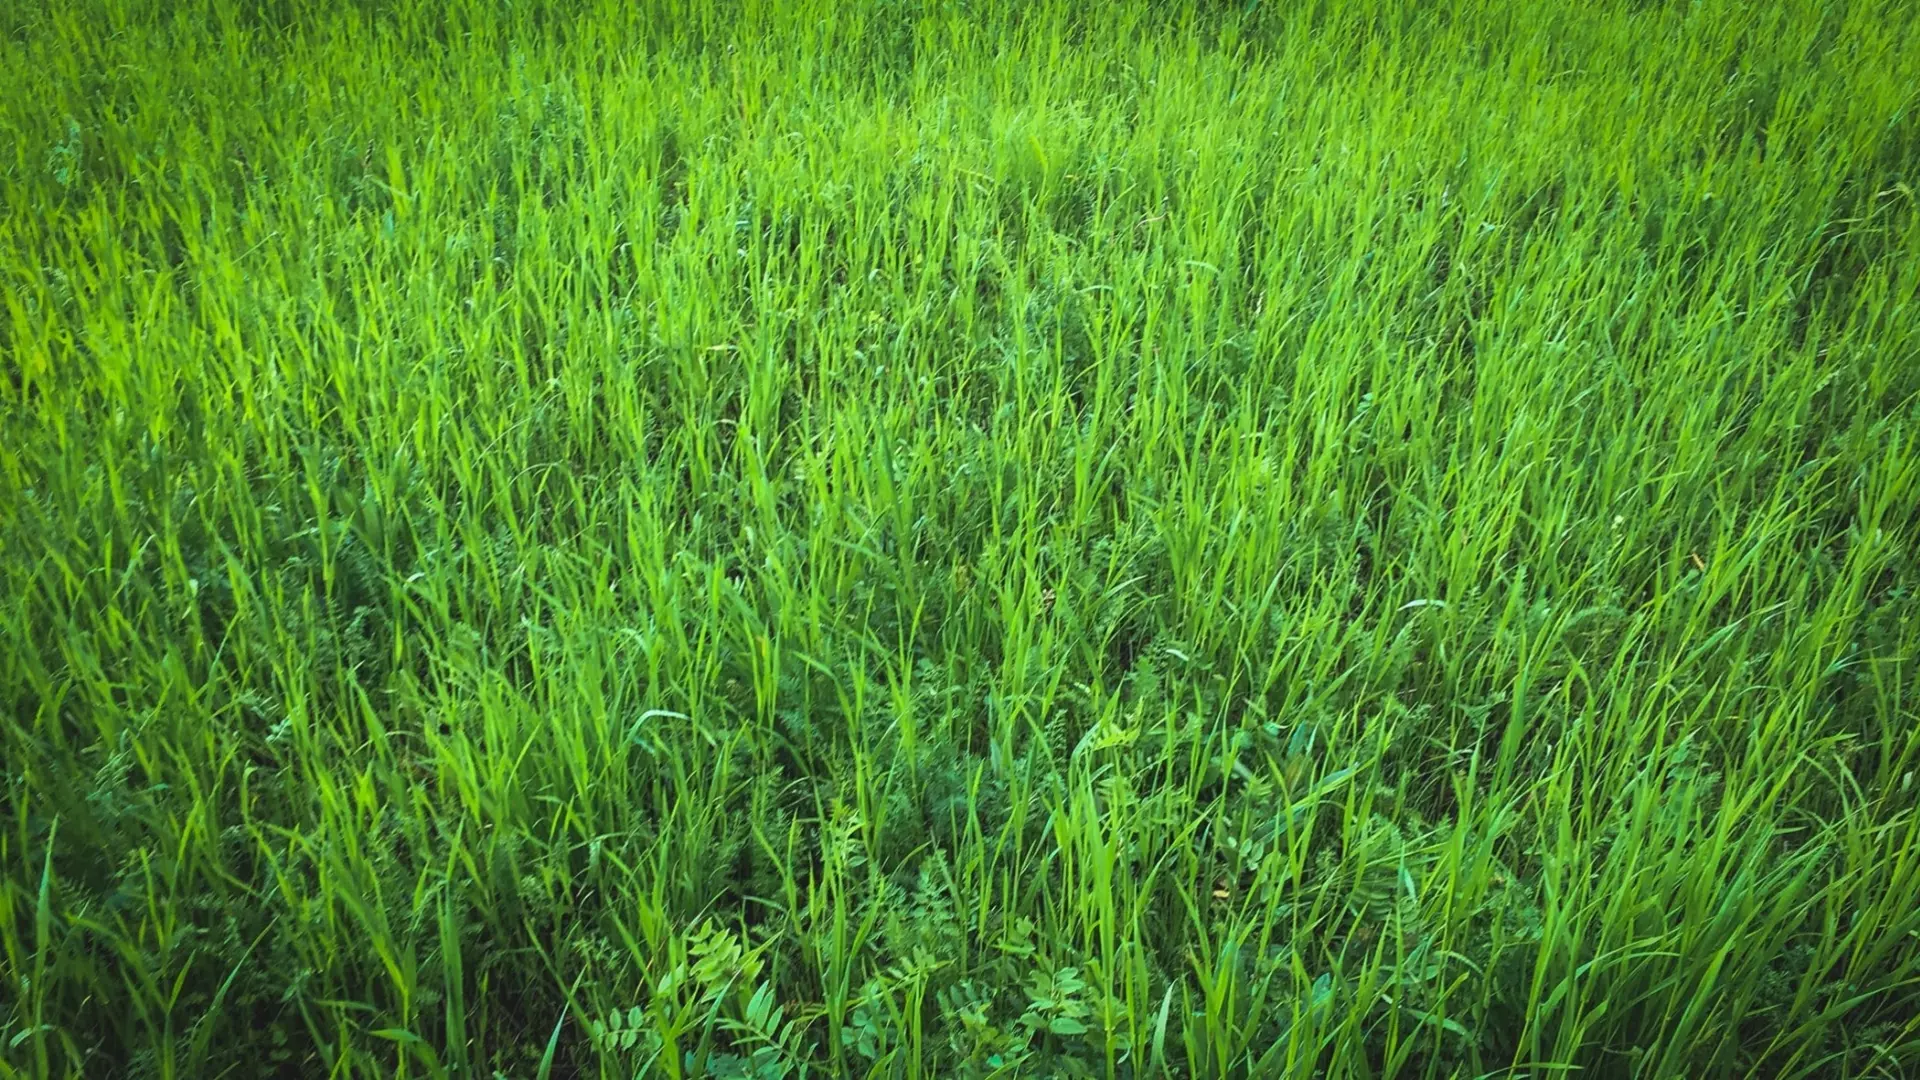 Запах свежескошенной травы — сигнал ужаса растений